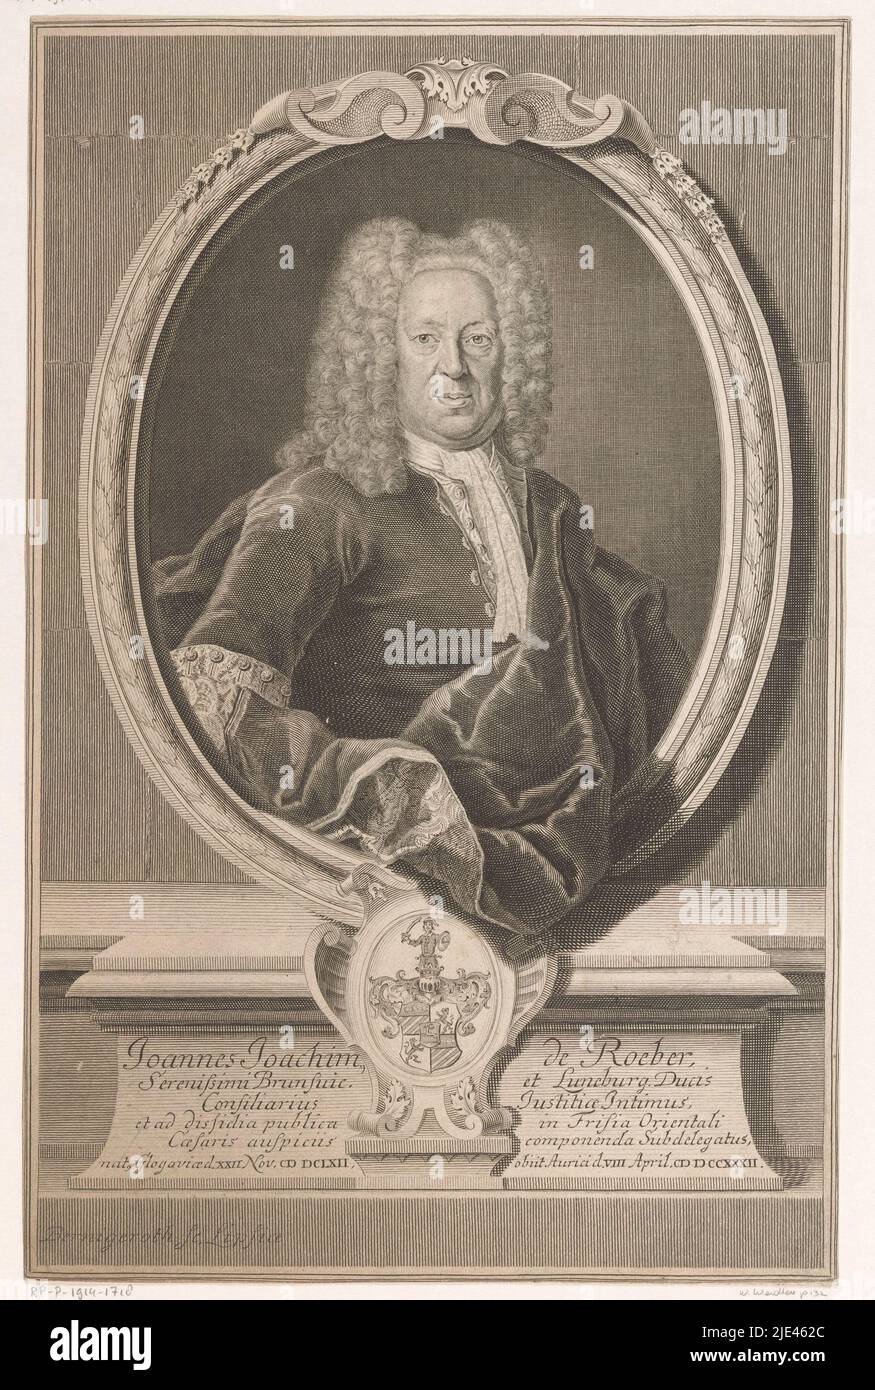 Portrait de Johann Joachim von Roeber, Martin Bernigeroth, 1732 - 1733, imprimerie : Martin Bernigeroth, (mentionné sur l'objet), Leipzig, 1732 - 1733, papier, gravure, h 309 mm × l 200 mm Banque D'Images